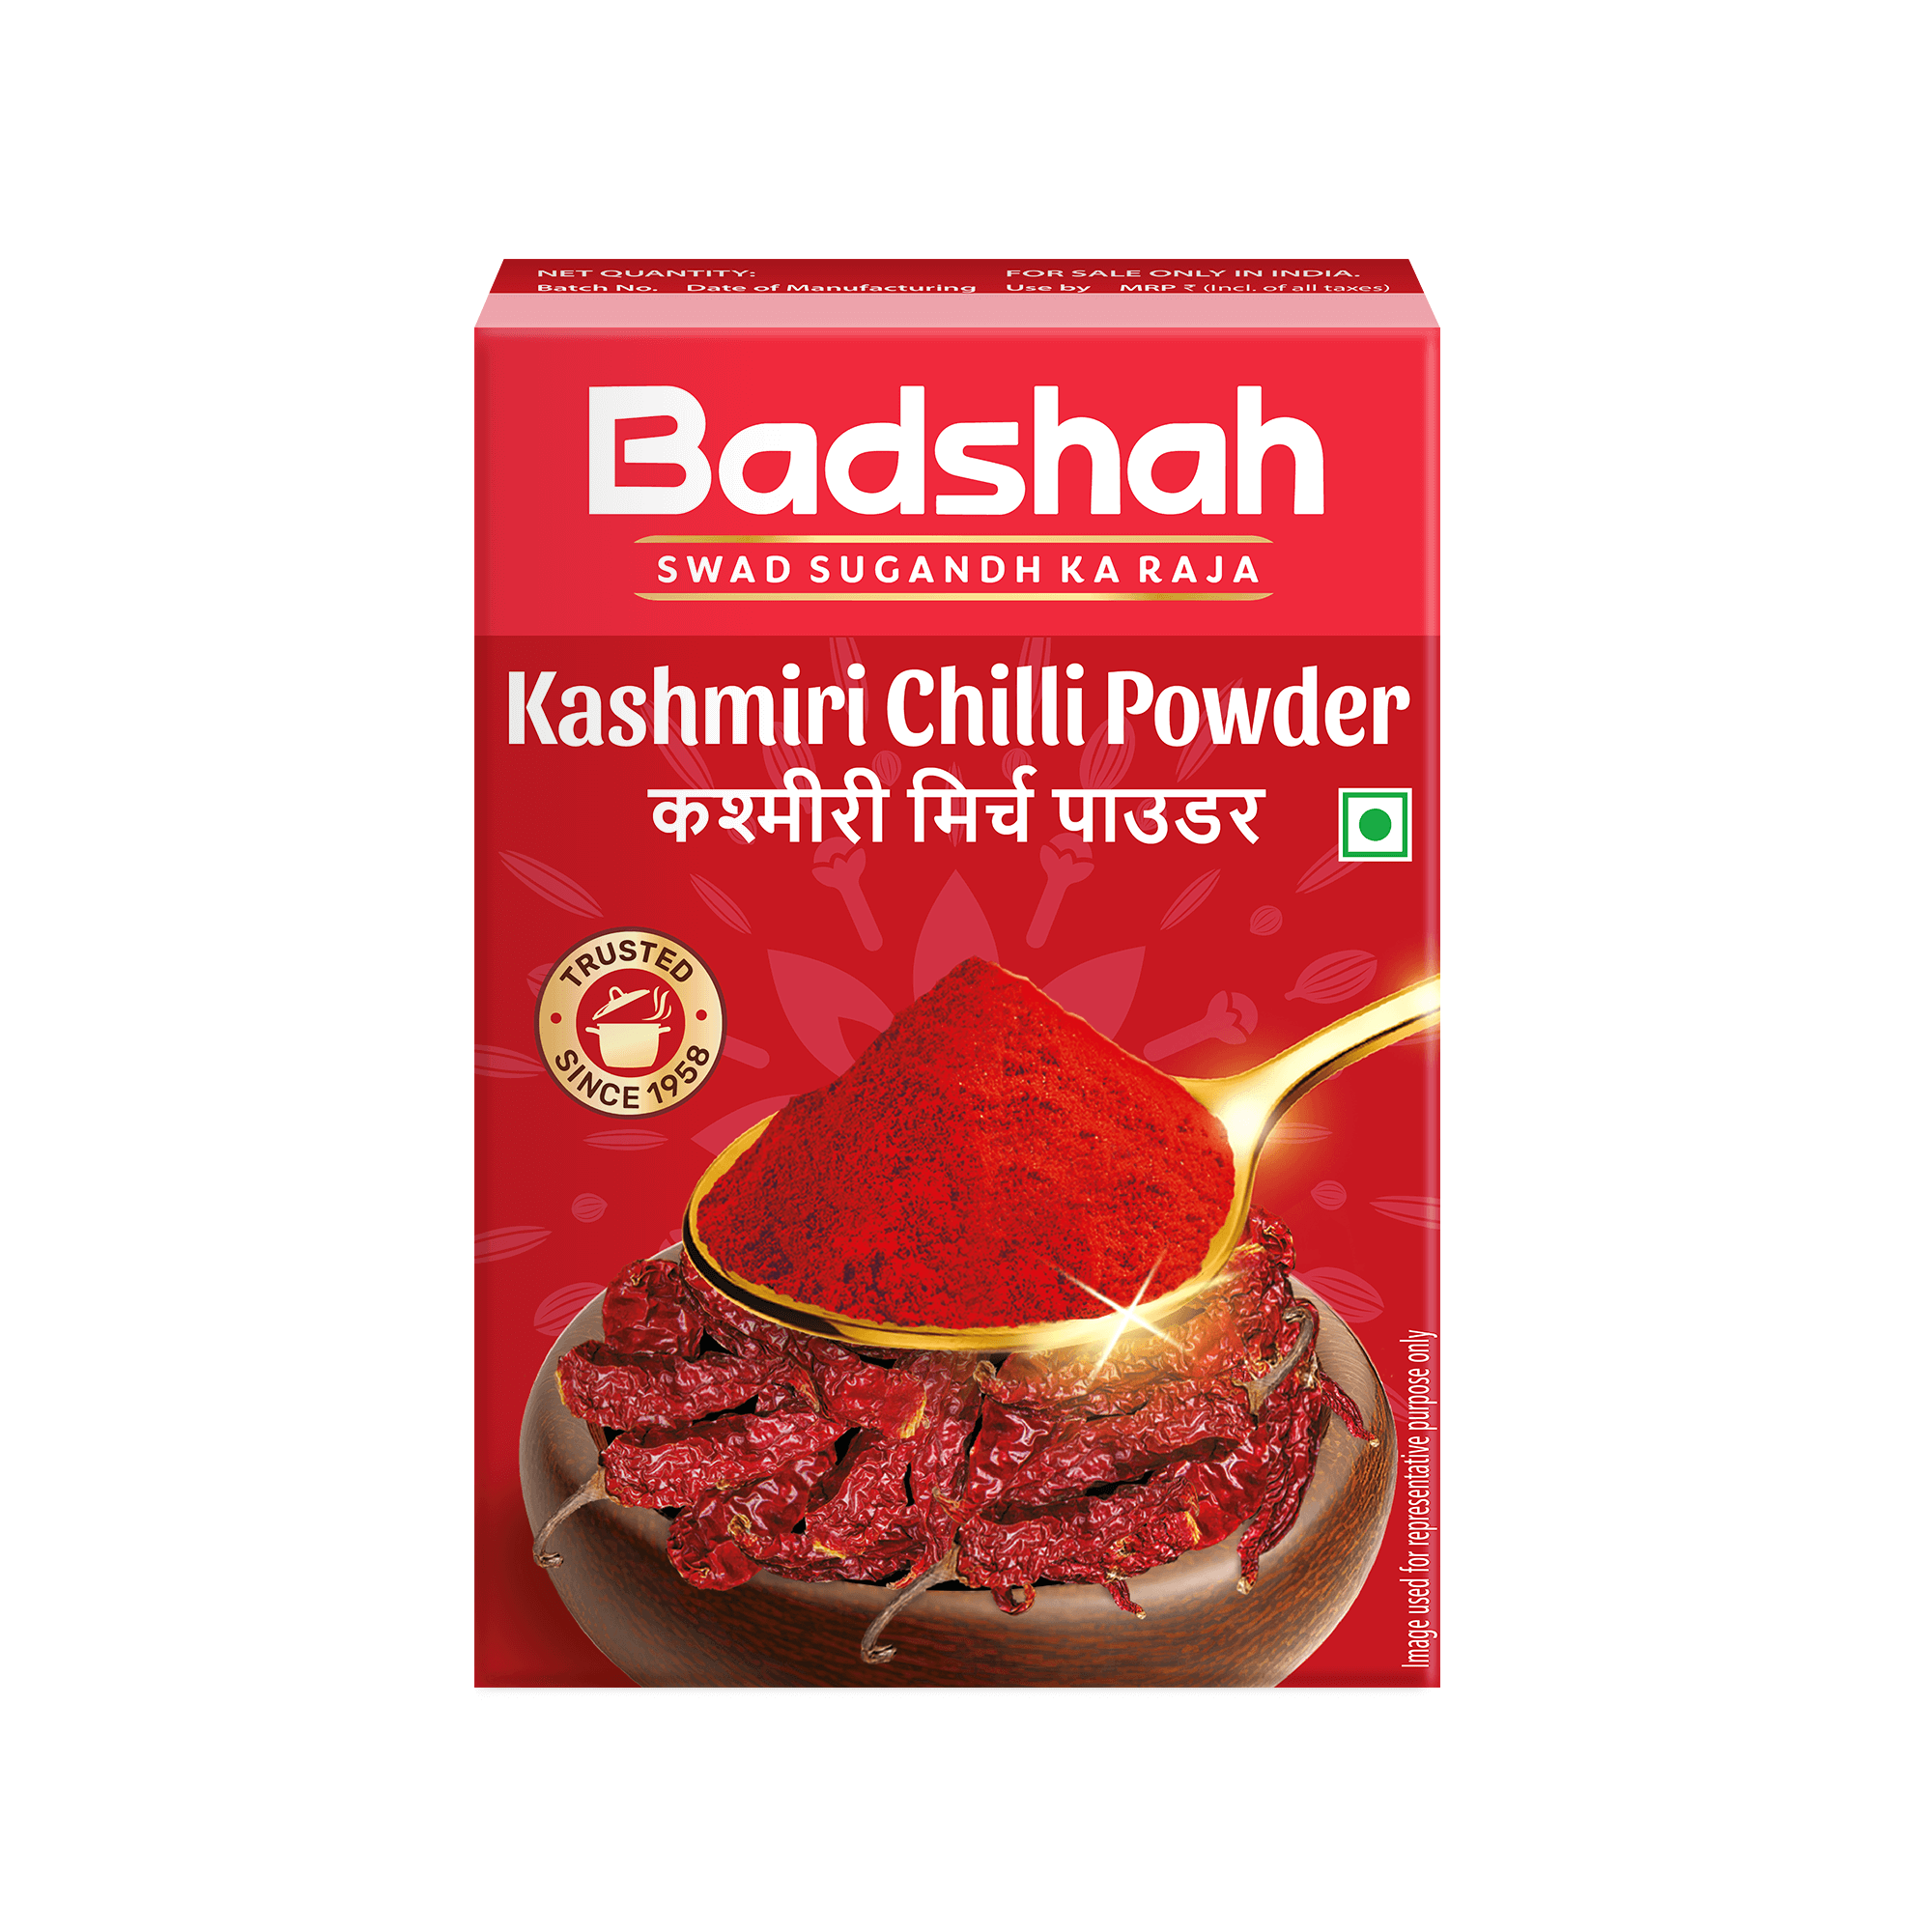 Badshah Kashmiri Chilli Powder |